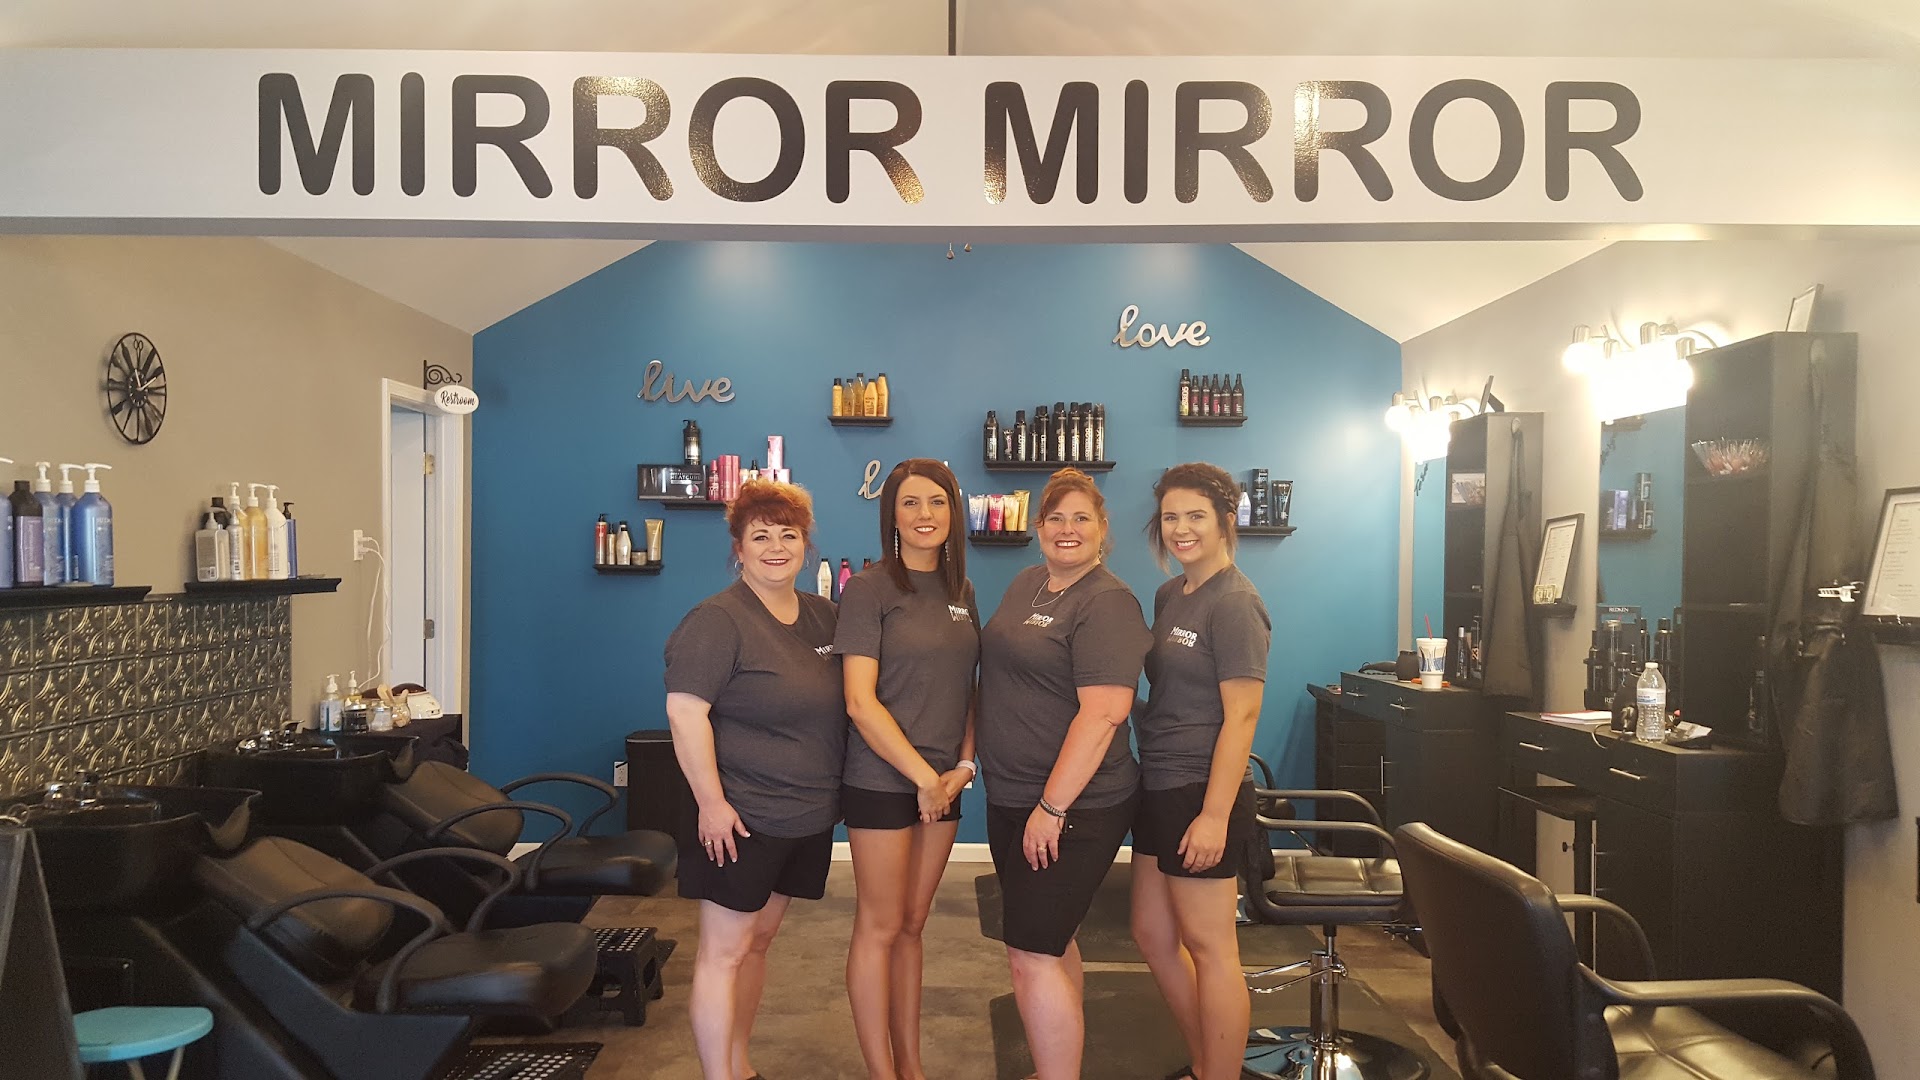 Mirror Mirror Hair Salon